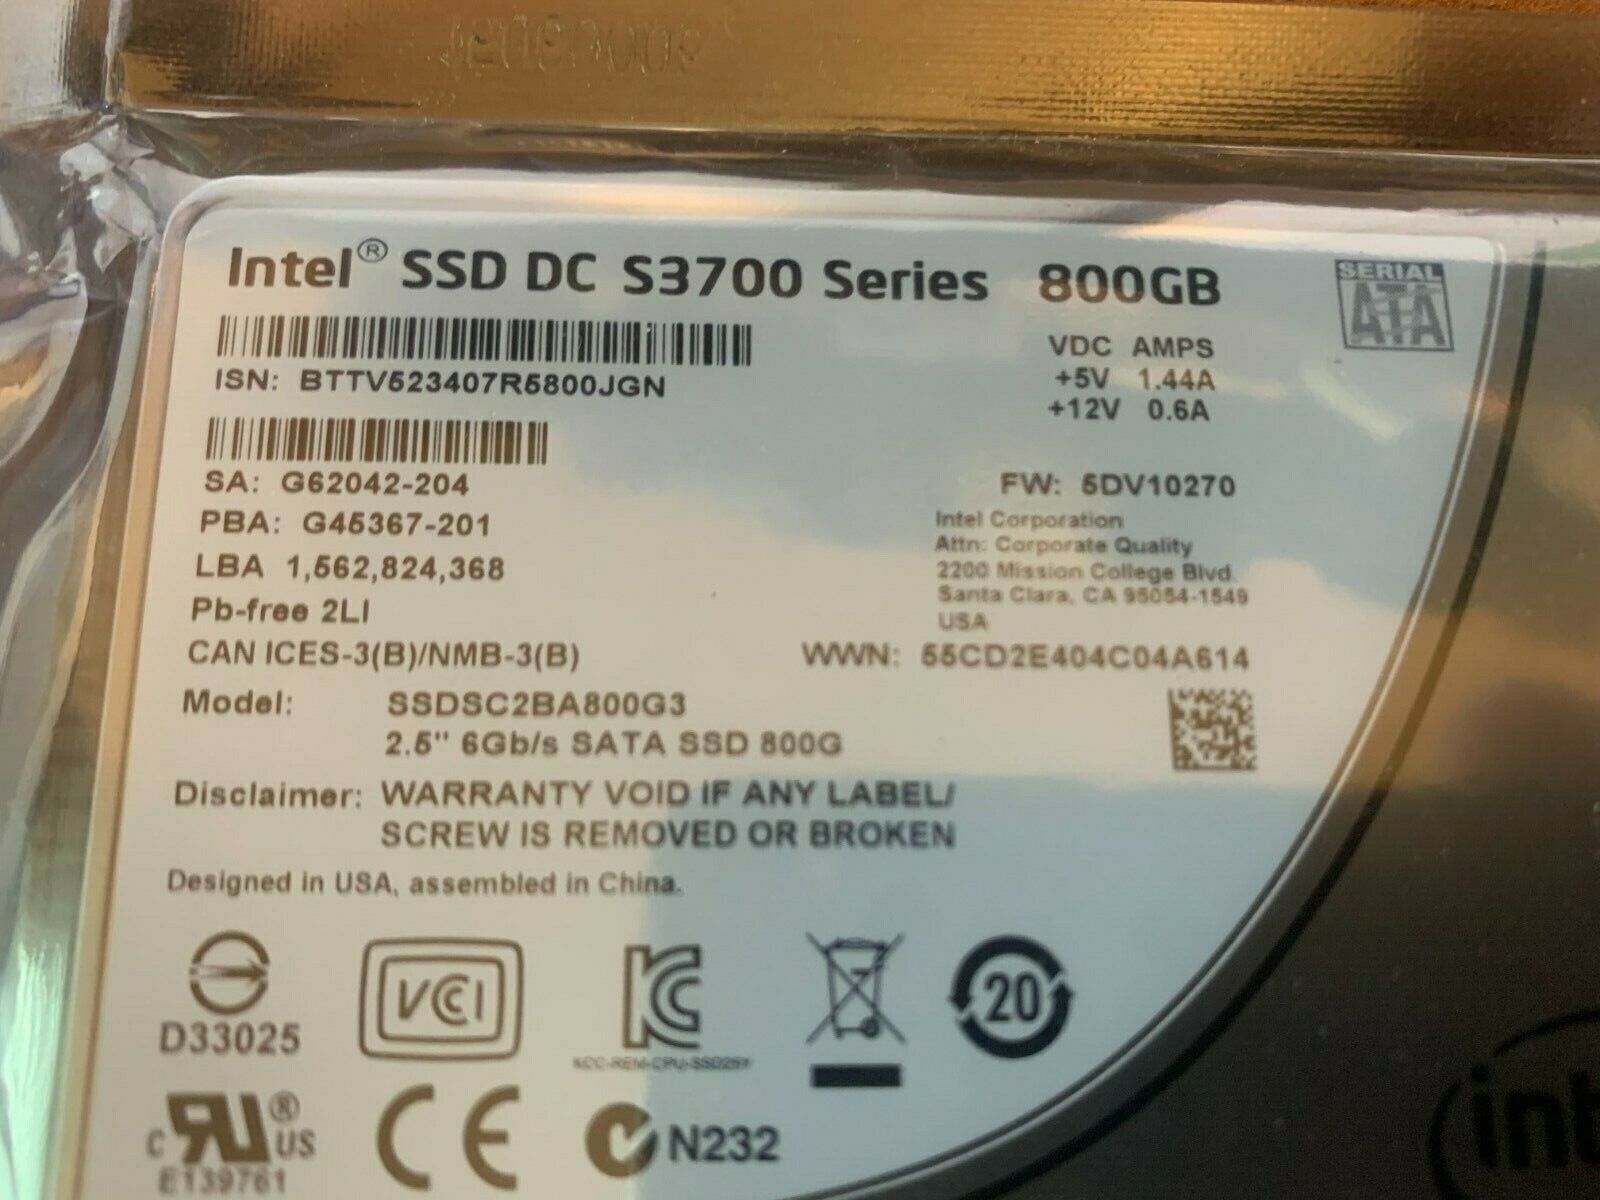 800GB S3700 Intel Series SSD 6Gbps SATA Enterprise Class SSD DC SSDSC2BA800G3